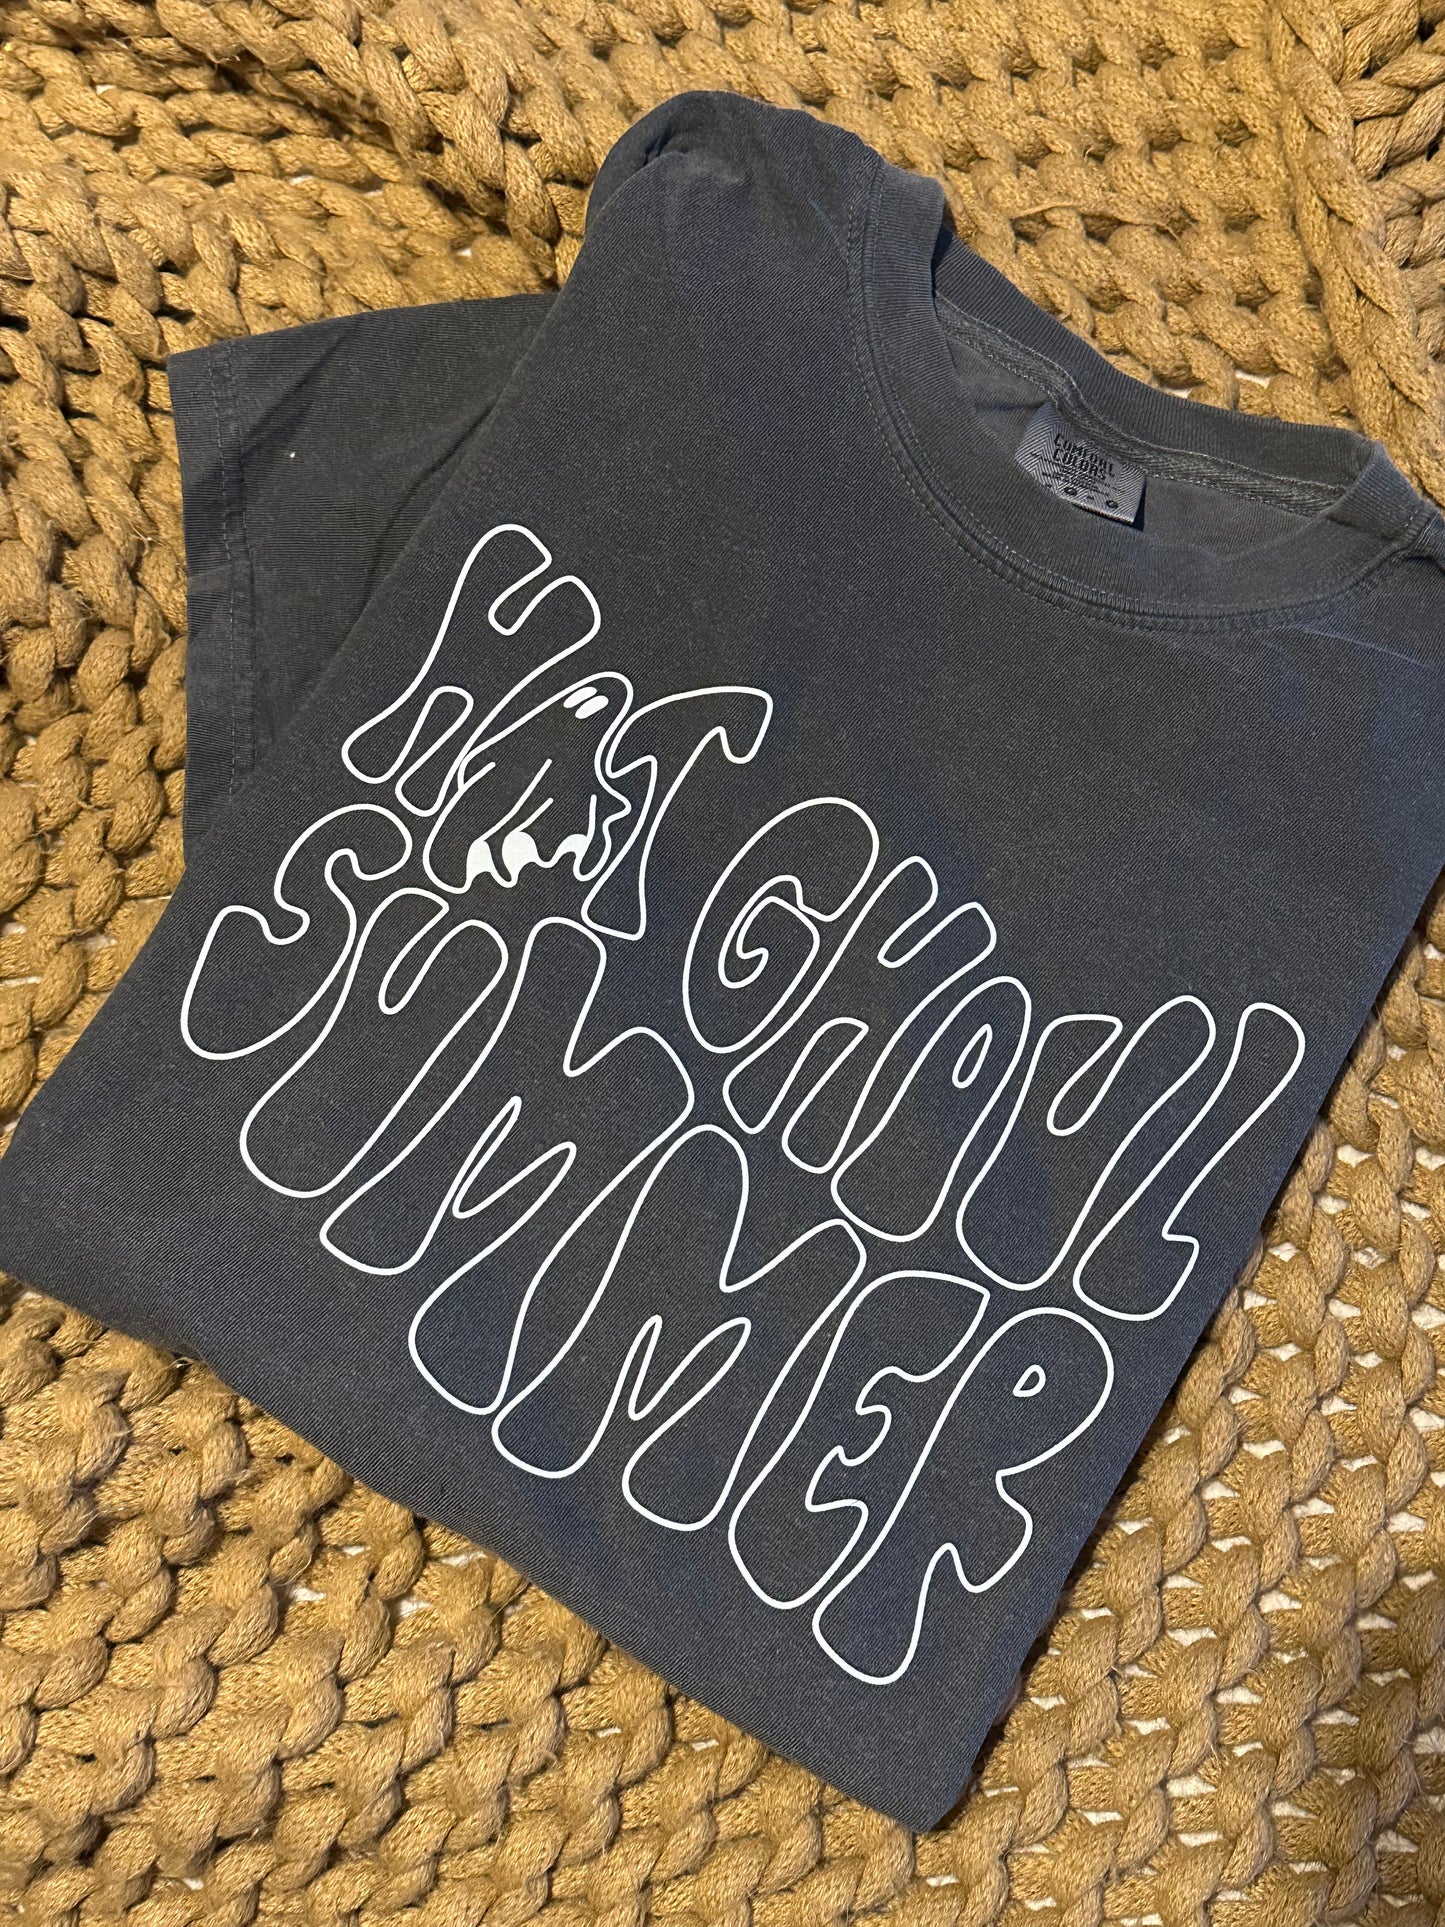 Hot Ghoul Summer T-shirt